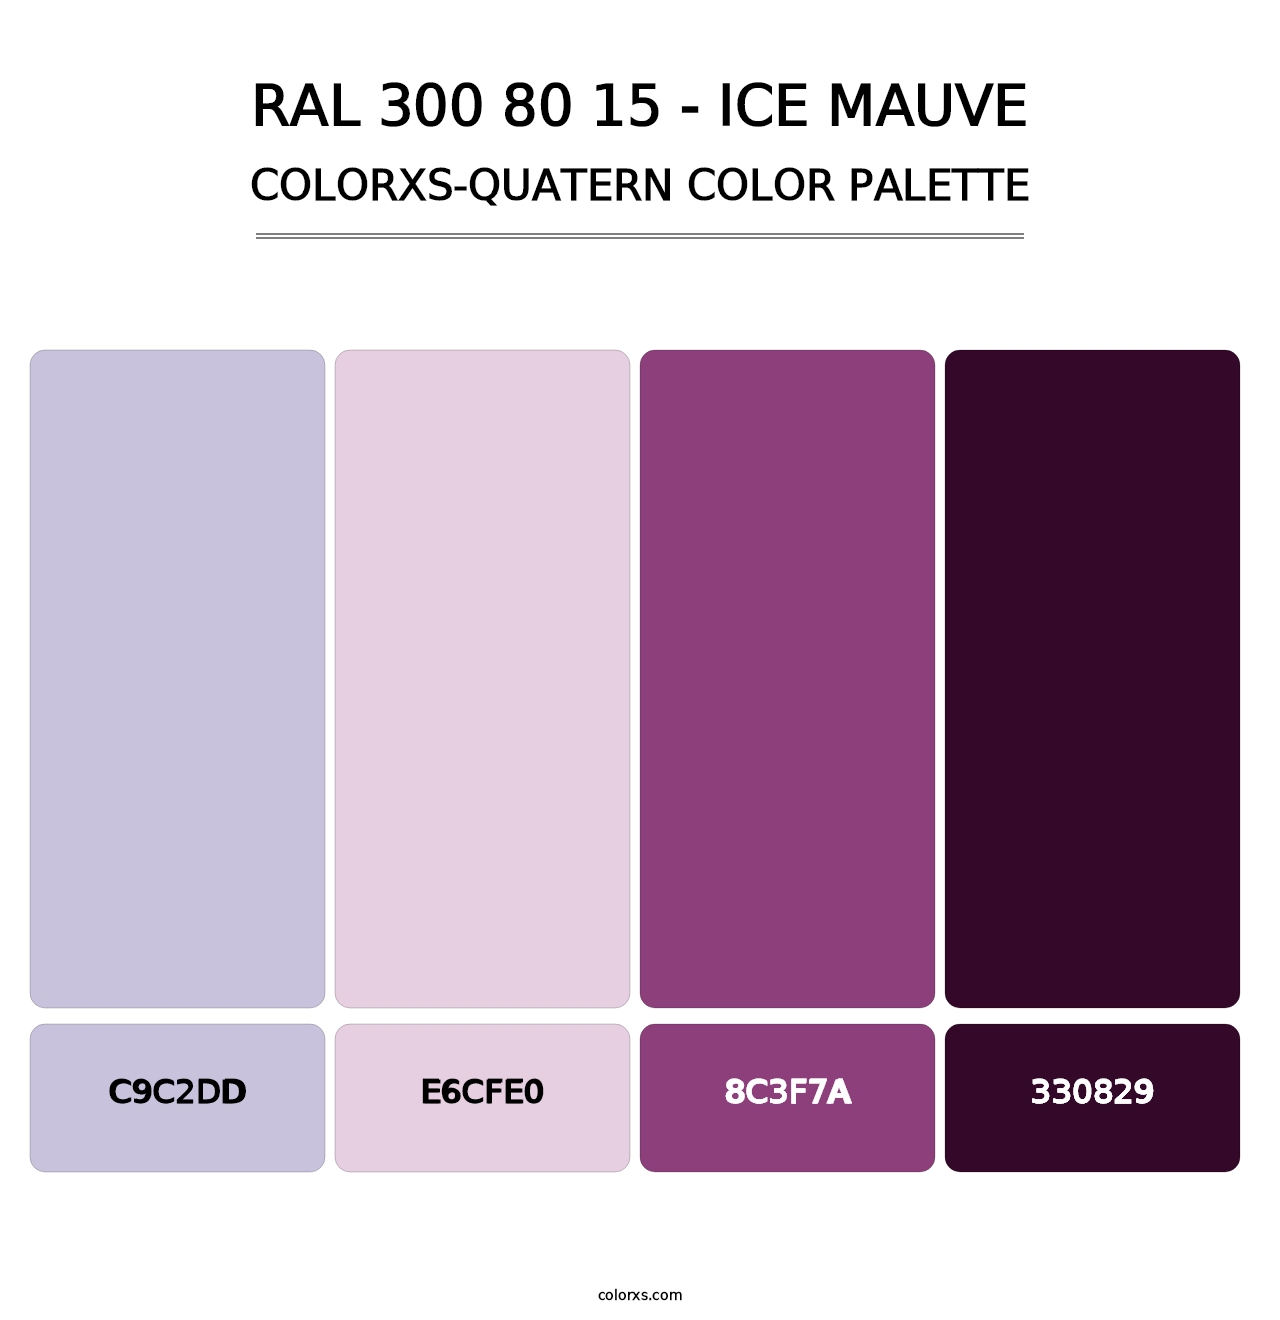 RAL 300 80 15 - Ice Mauve - Colorxs Quatern Palette